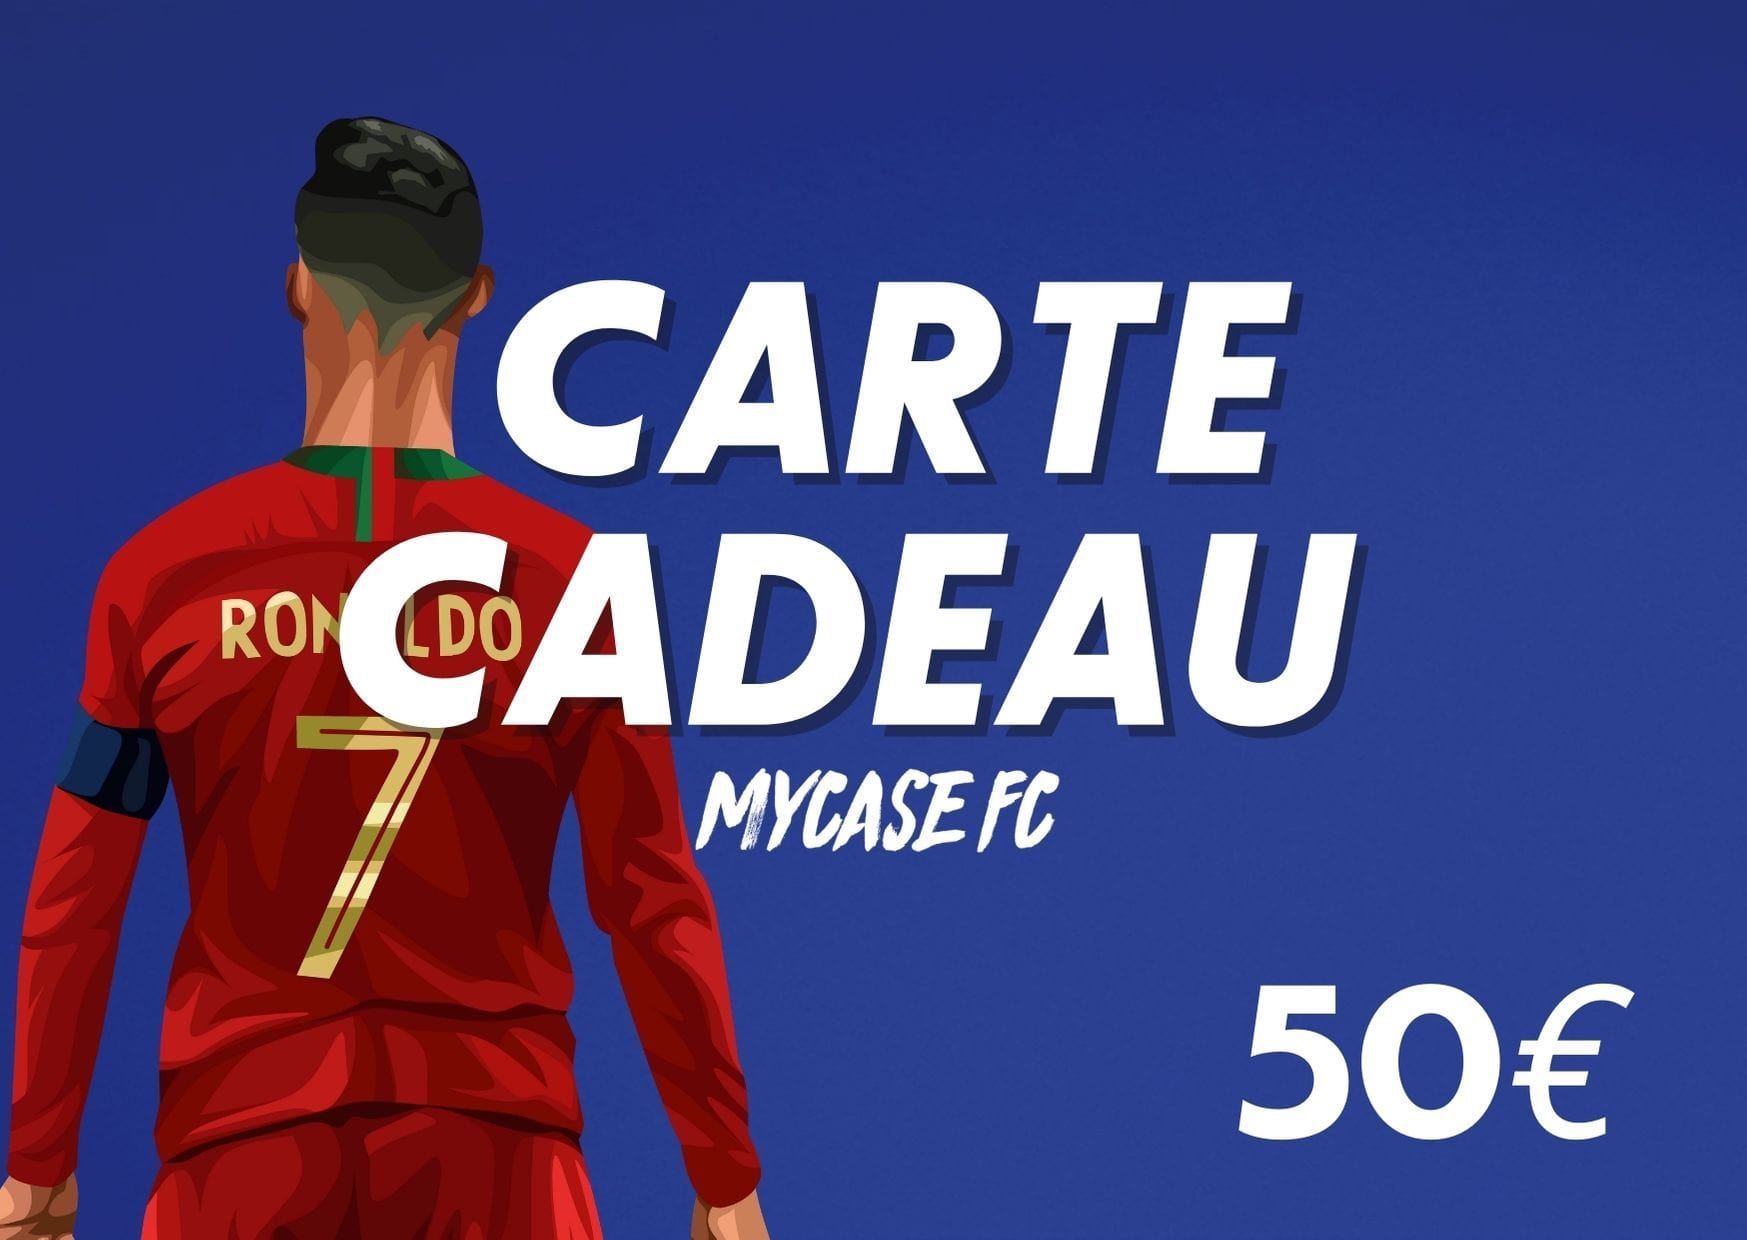 CARTE CADEAU 50€ - MYCASE FC